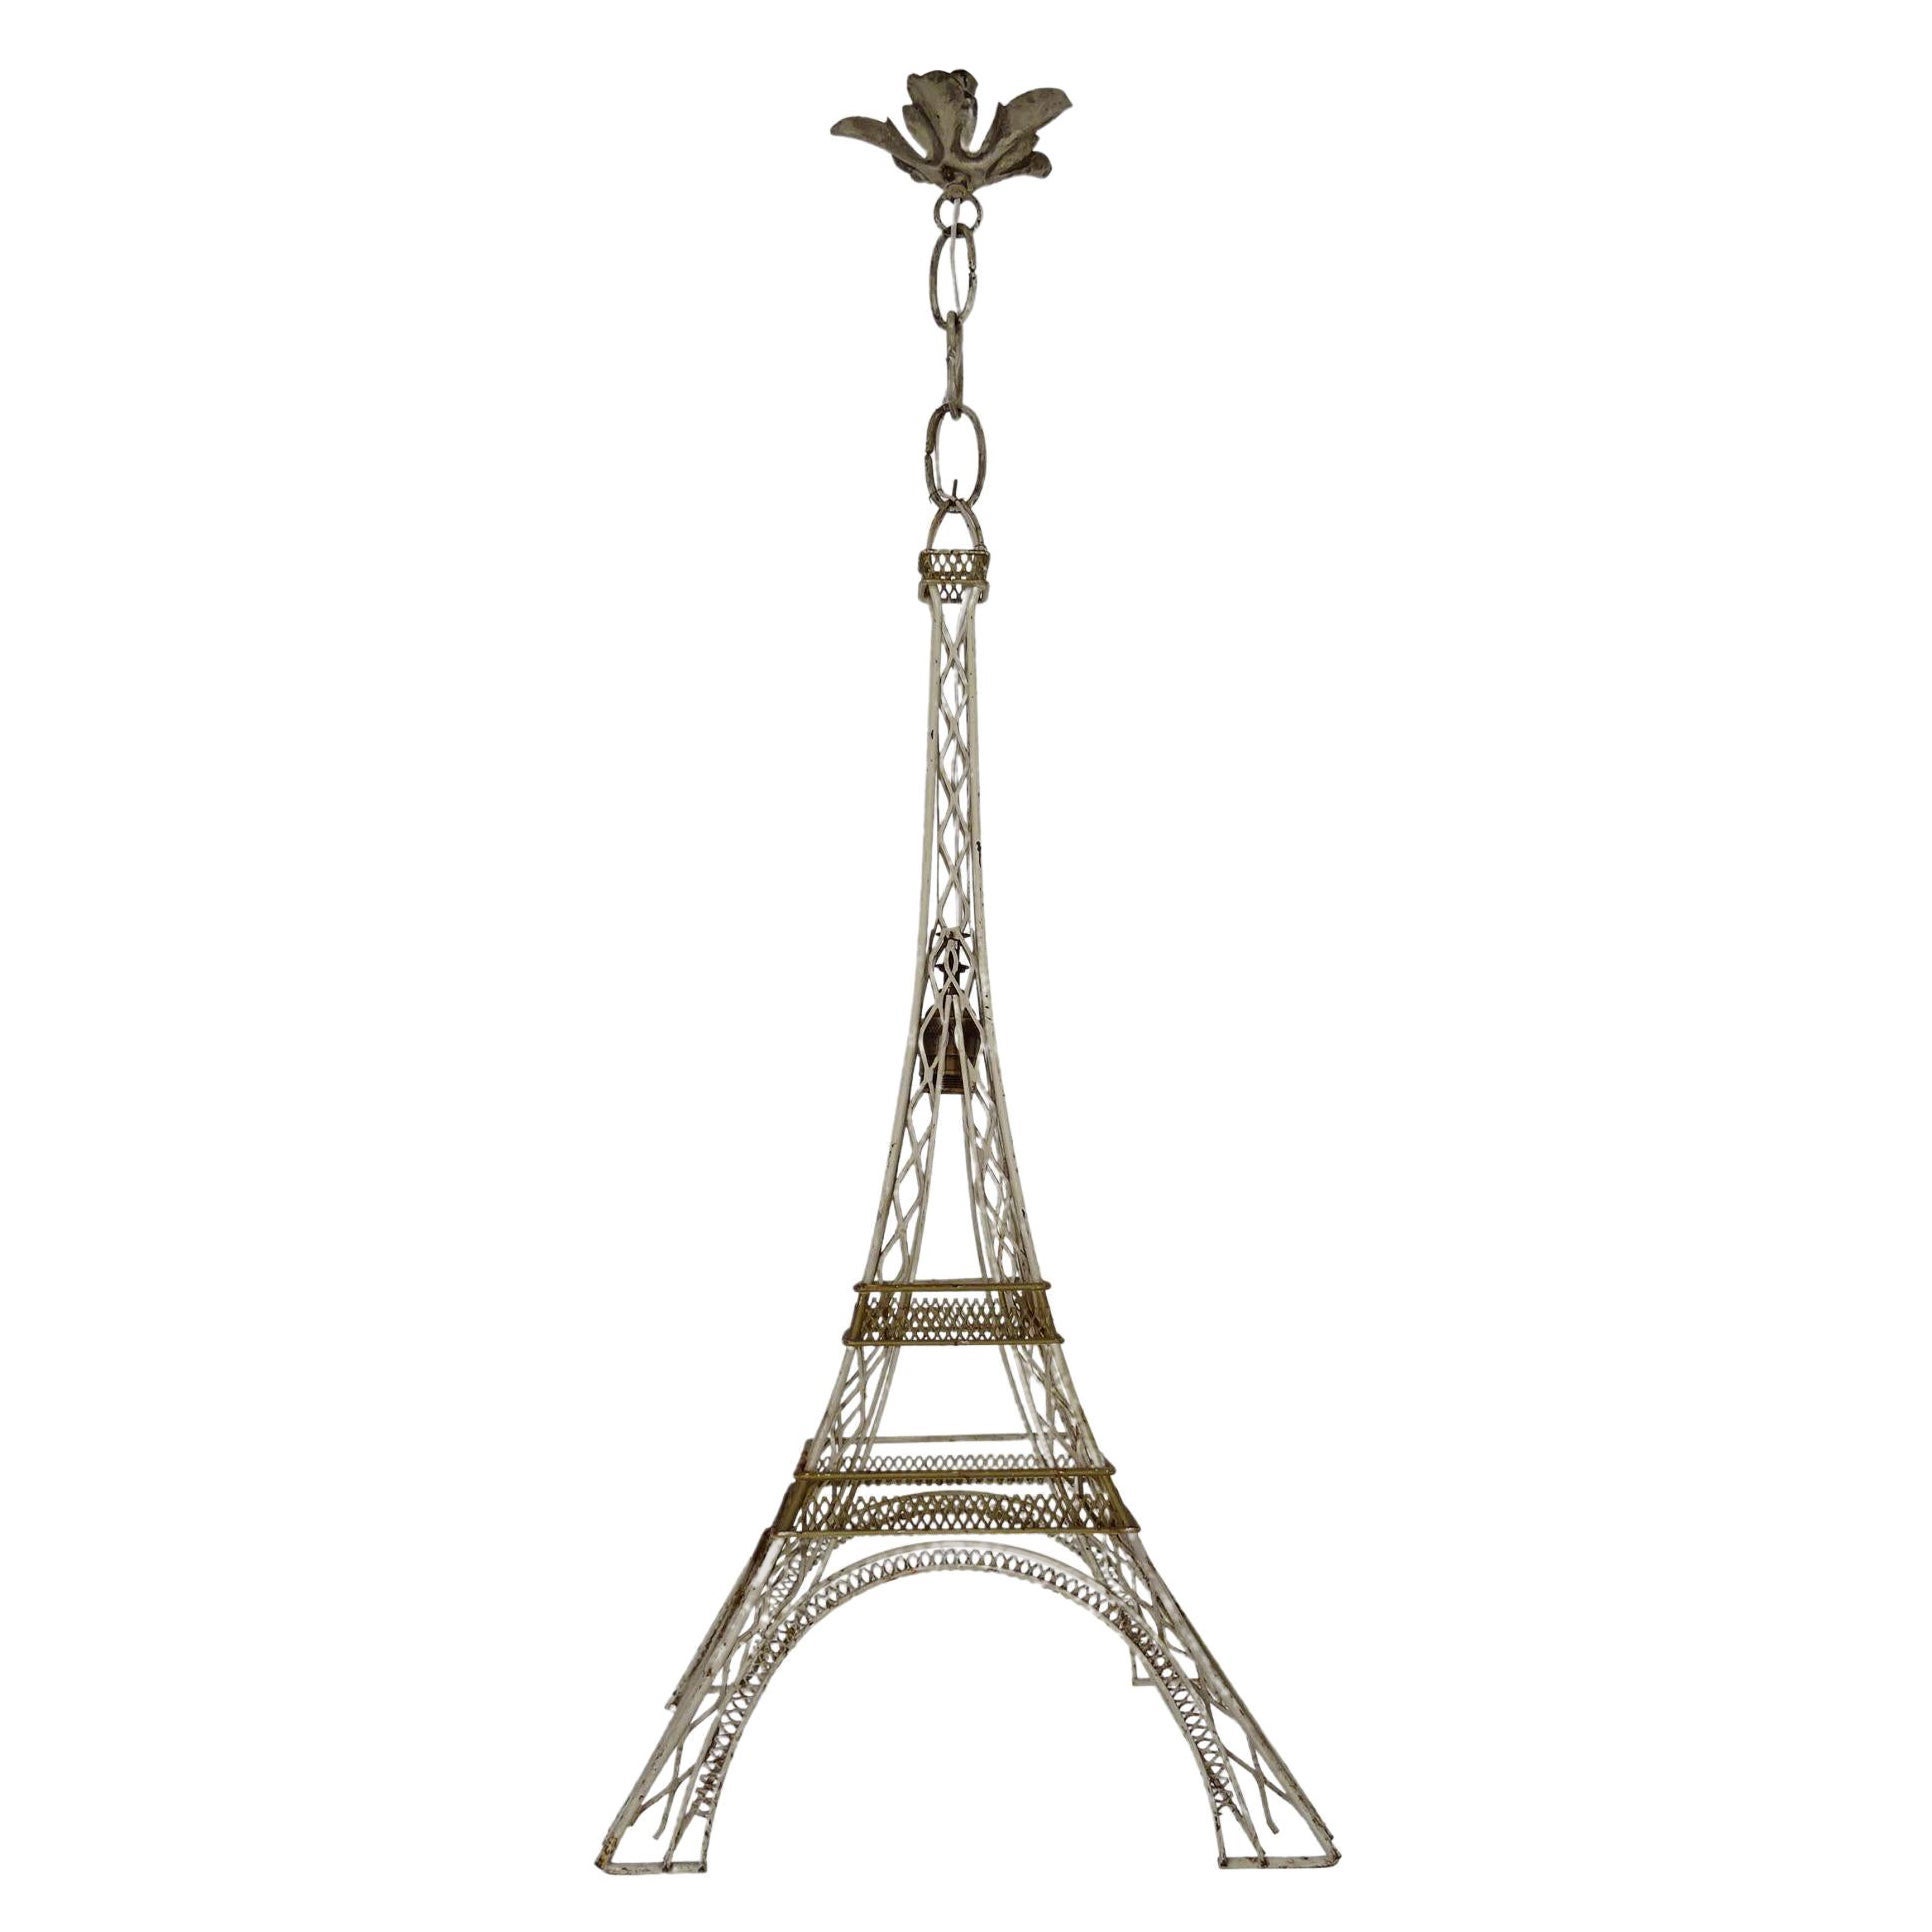 Pariser Eiffelturm-Kronleuchter in Creme und Gold, um 1940, Einzigartig